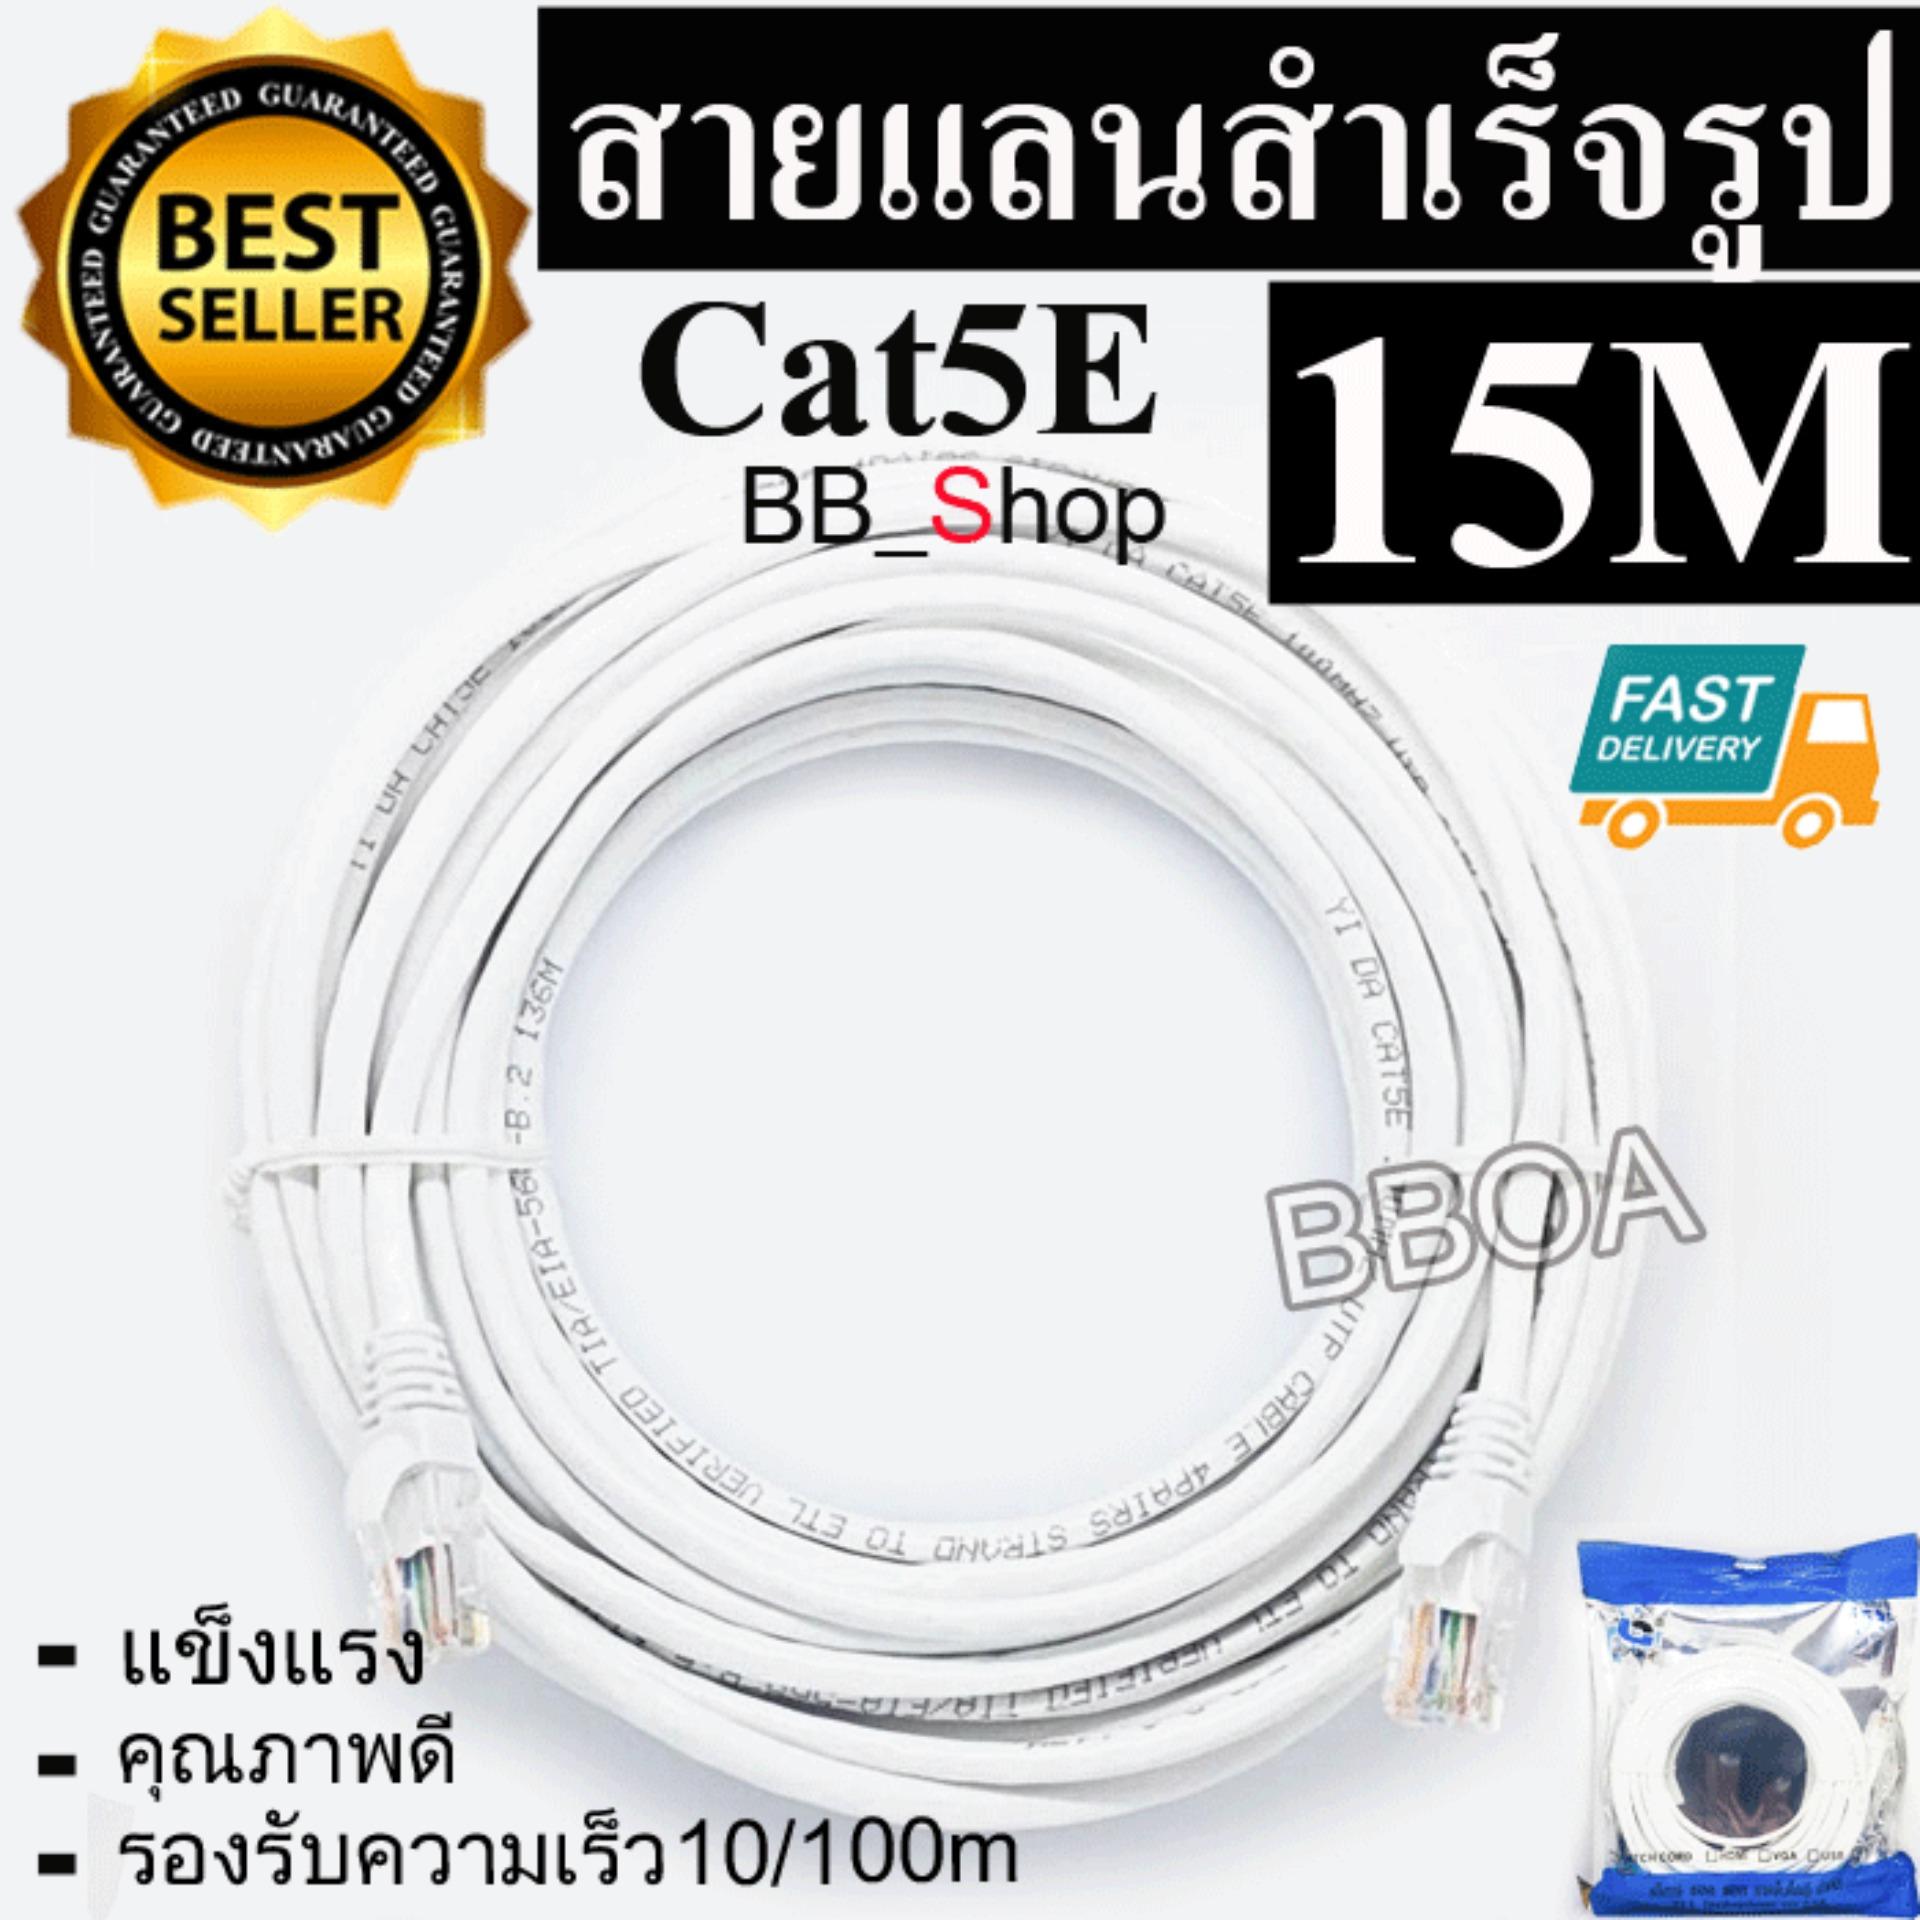 BB Link Cable Lan CAT5E 15m สายแลน เข้าหัวสำเร็จรูป 15เมตร (สีขาว)